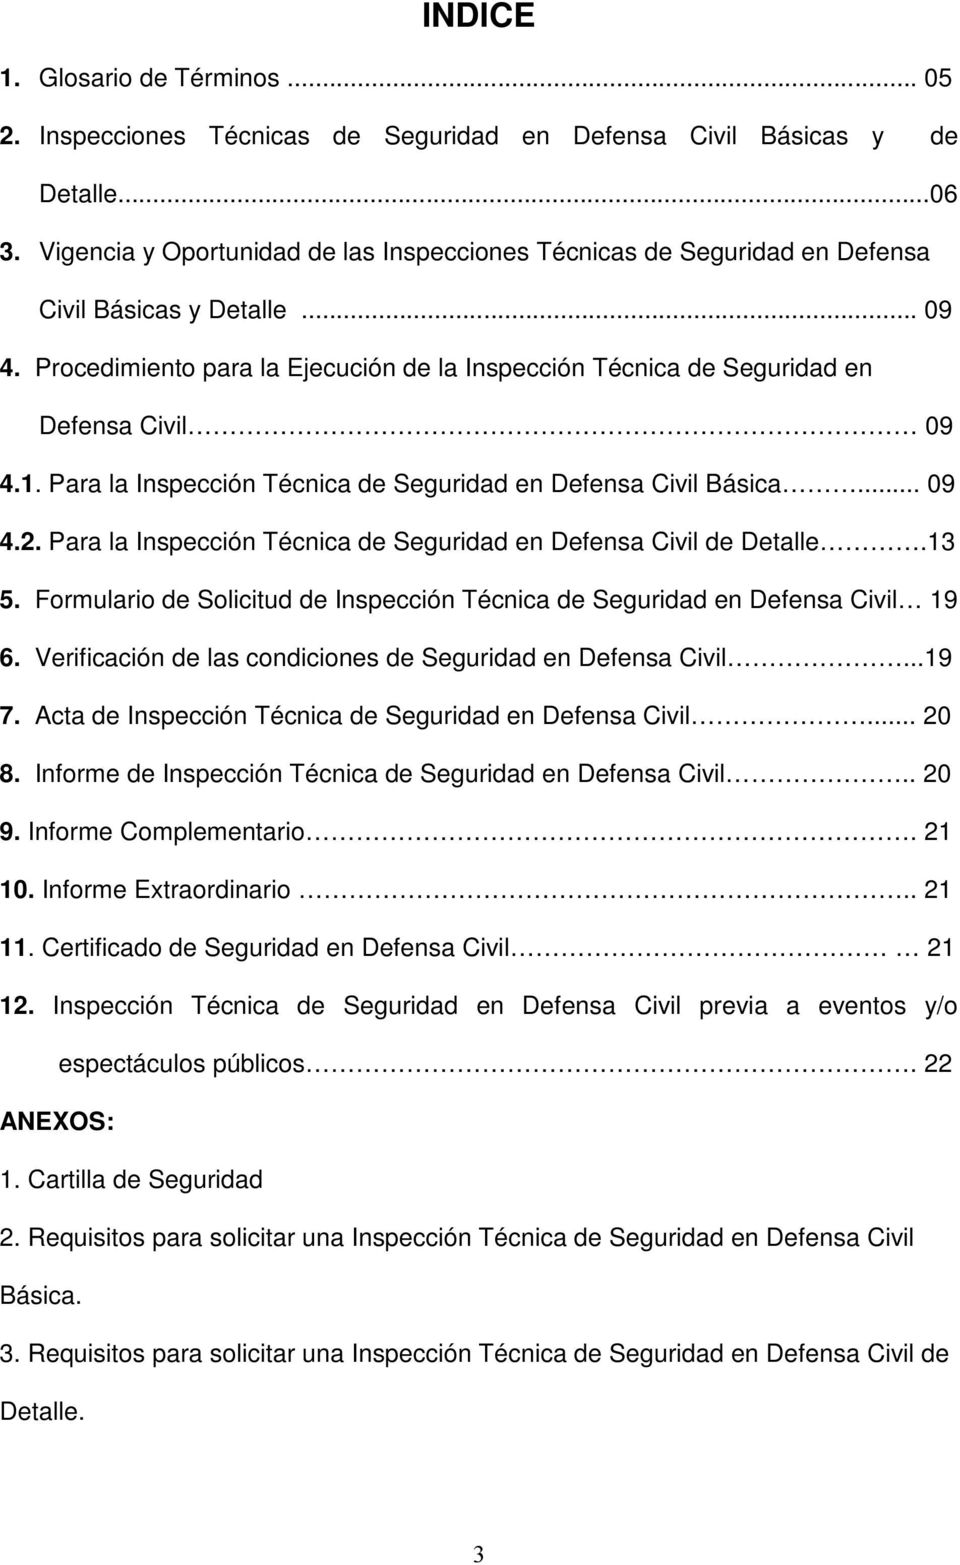 Procedimiento para la Ejecución de la Inspección Técnica de Seguridad en Defensa Civil 09 4.1. Para la Inspección Técnica de Seguridad en Defensa Civil Básica... 09 4.2.